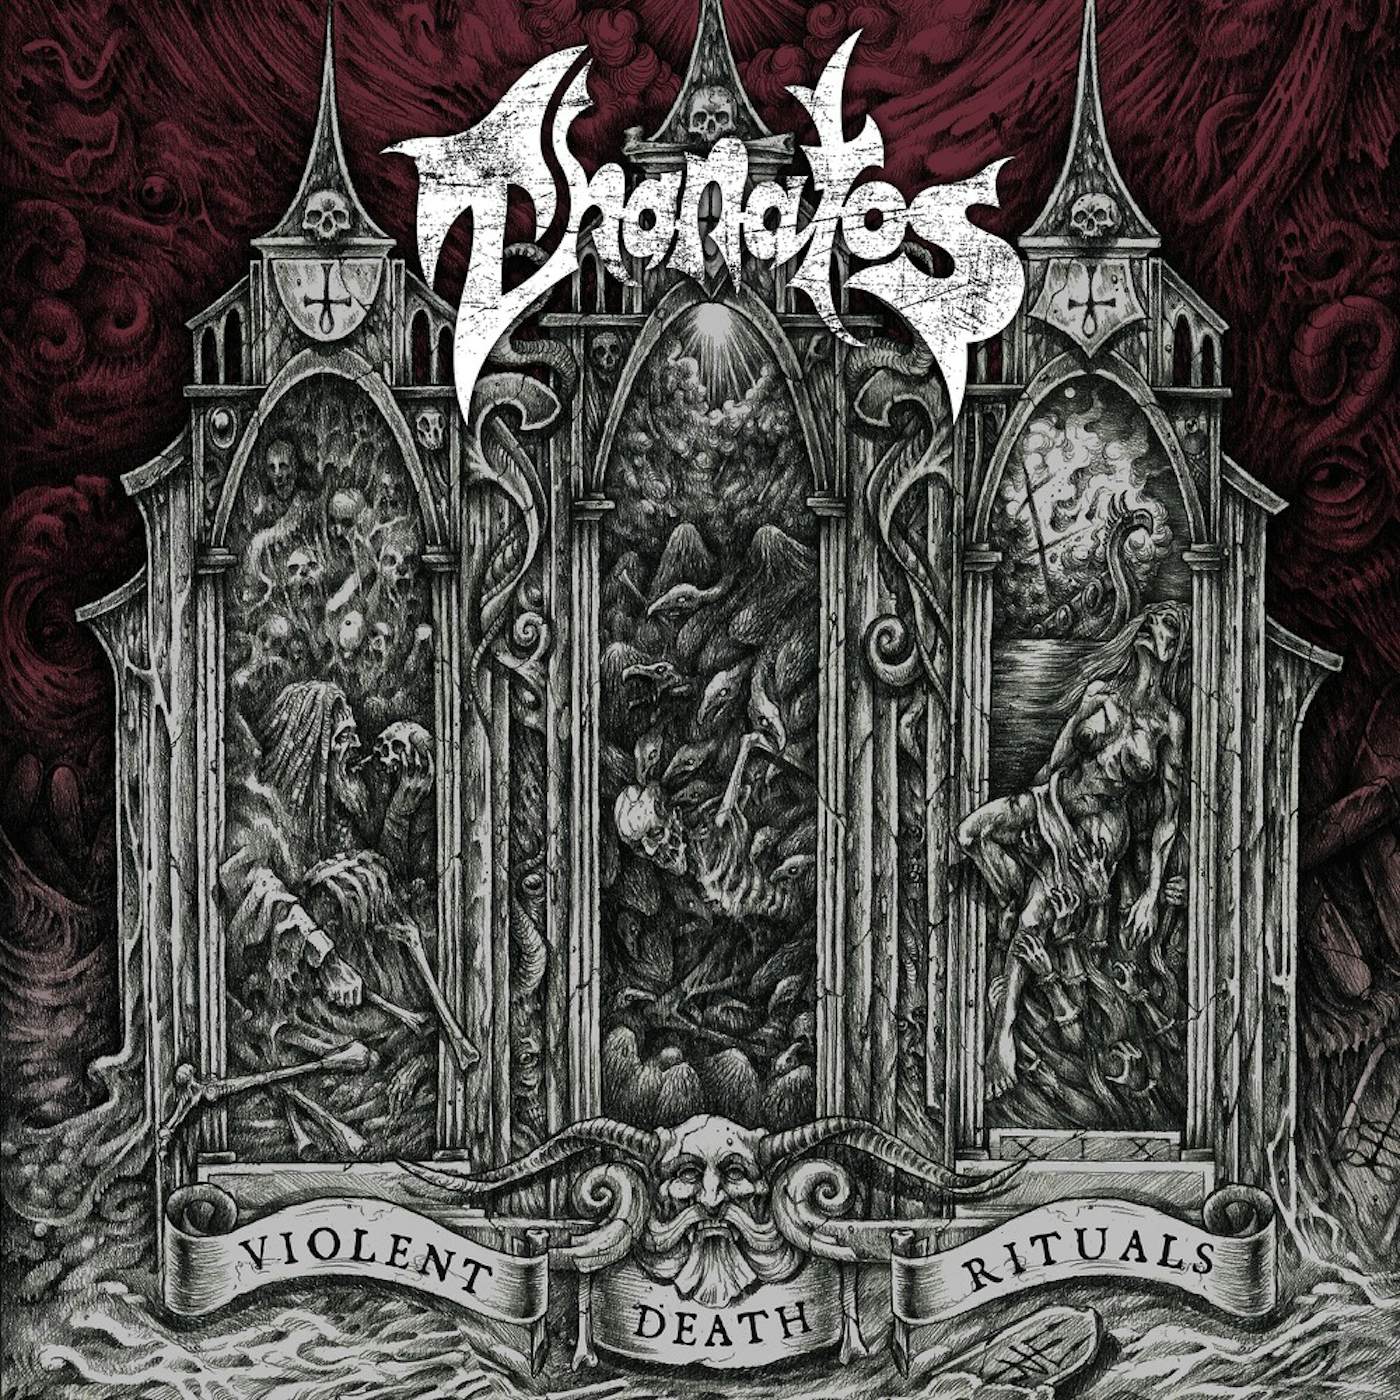 Thanatos Violent Death Rituals Vinyl Record